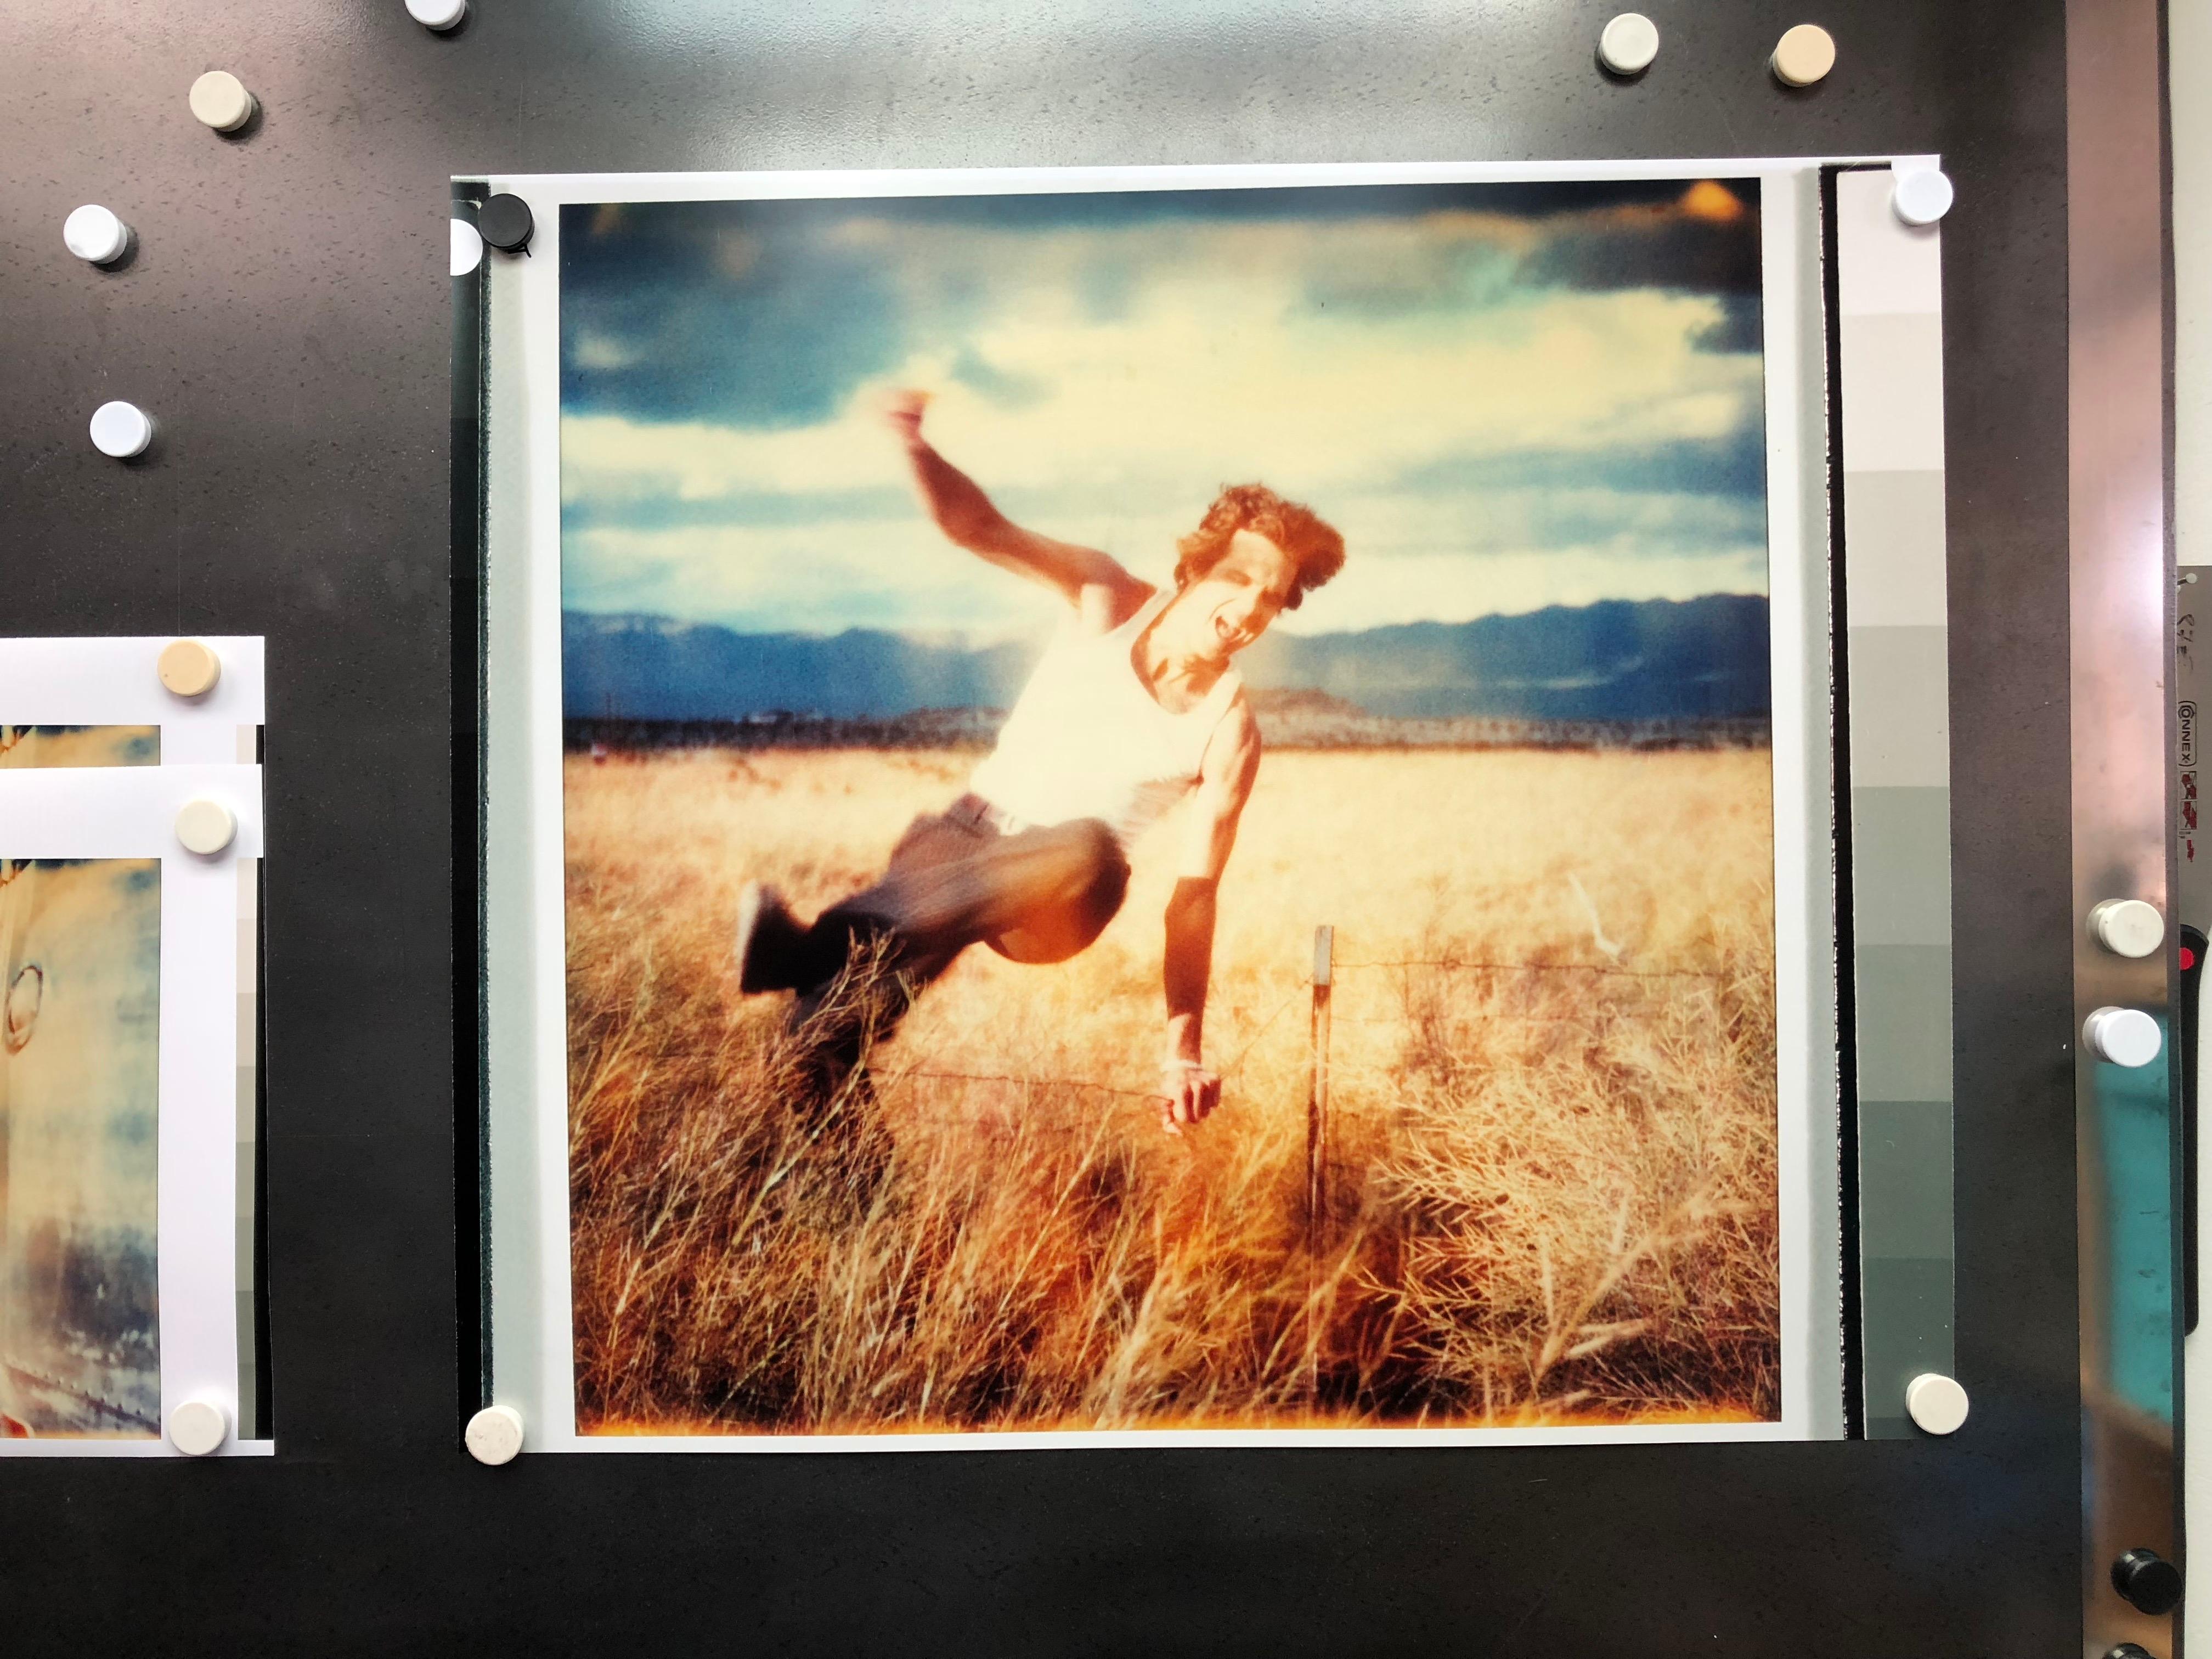 Feld der Träume (Sidewinder) - 2005

80 x 78 cm, 
Auflage von 5, 
analoger C-Print, von der Künstlerin handgedruckt, basierend auf dem Polaroid, 
Künstlerisches Inventar 3131.02, 
Nicht montiert

Stefanie Schneiders schillernde Situationen spielen